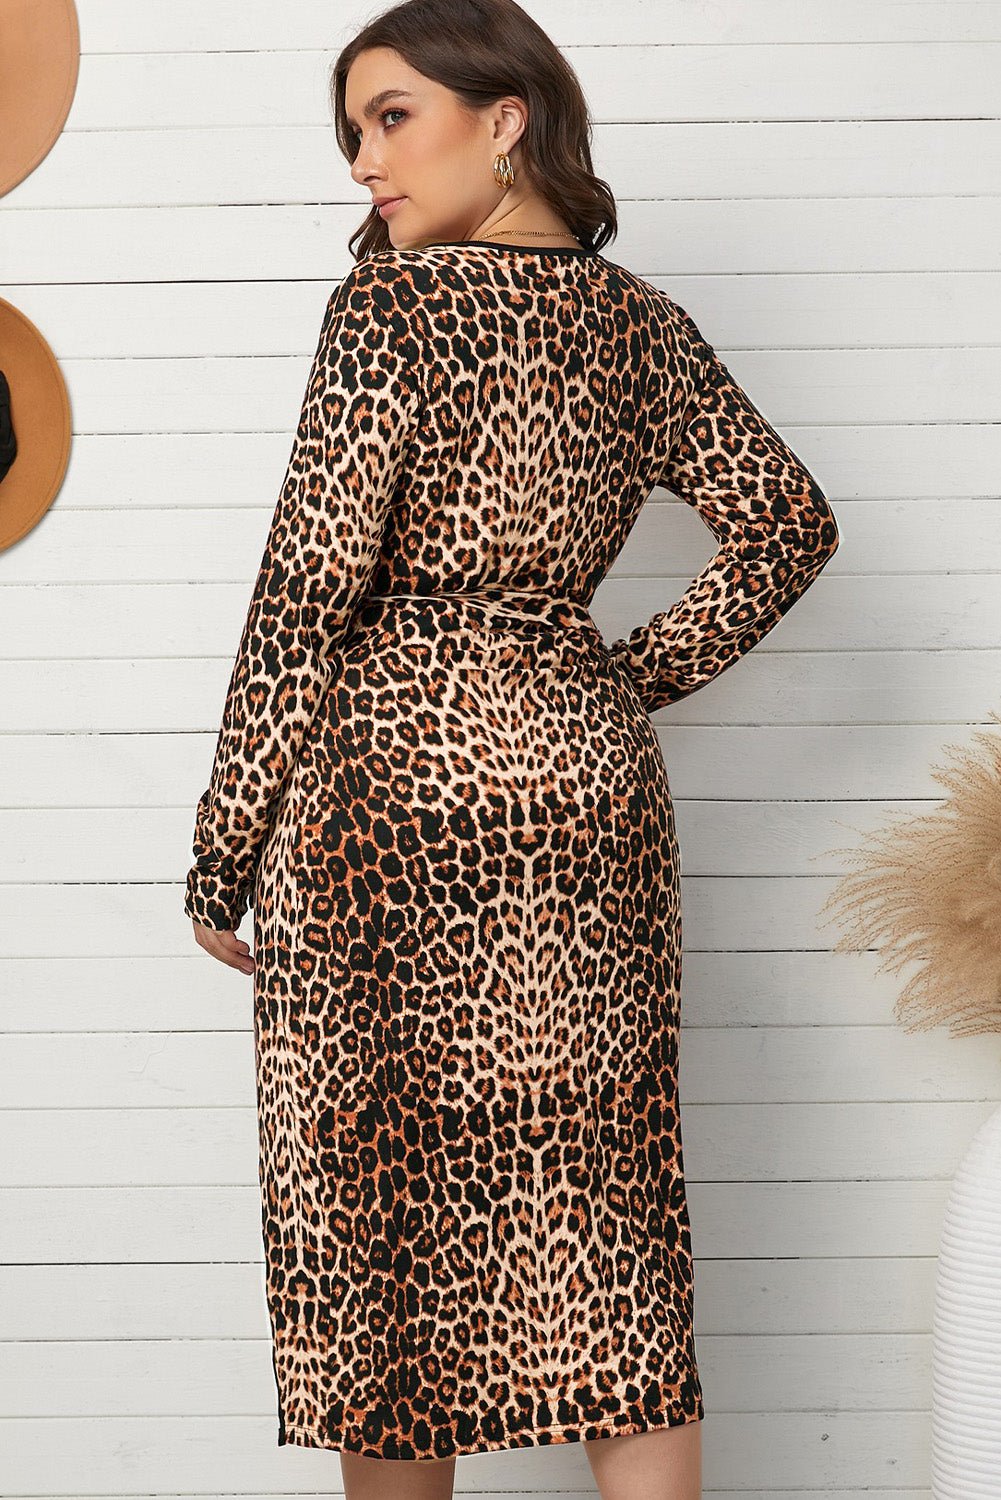 Plus Size Leopard Belted Surplice Wrap Dress - OMG! Rose